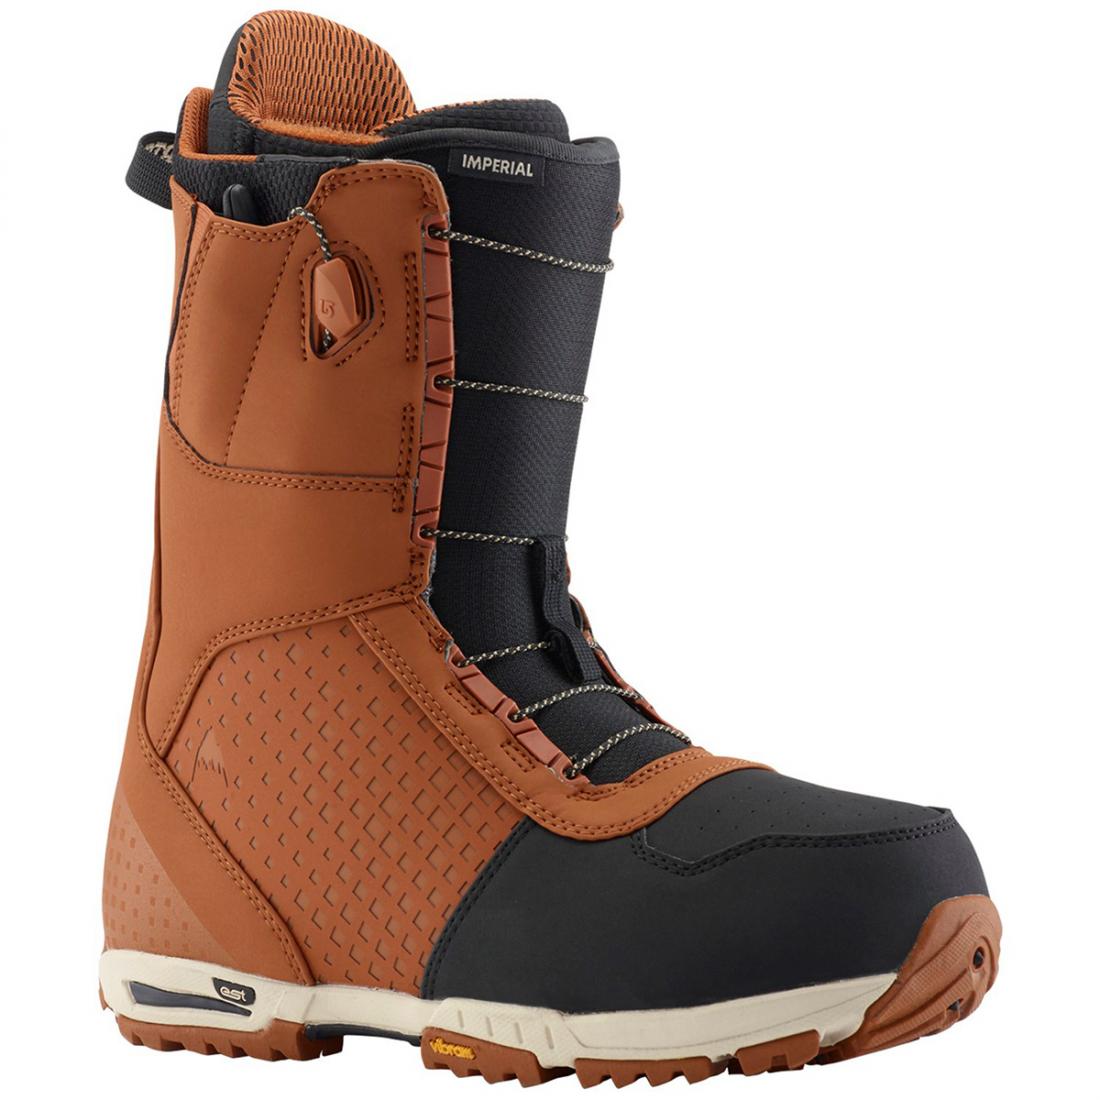 Ботинки сноубордические IMPERIAL мужские Burton, цвет коричневый, размер 9.5